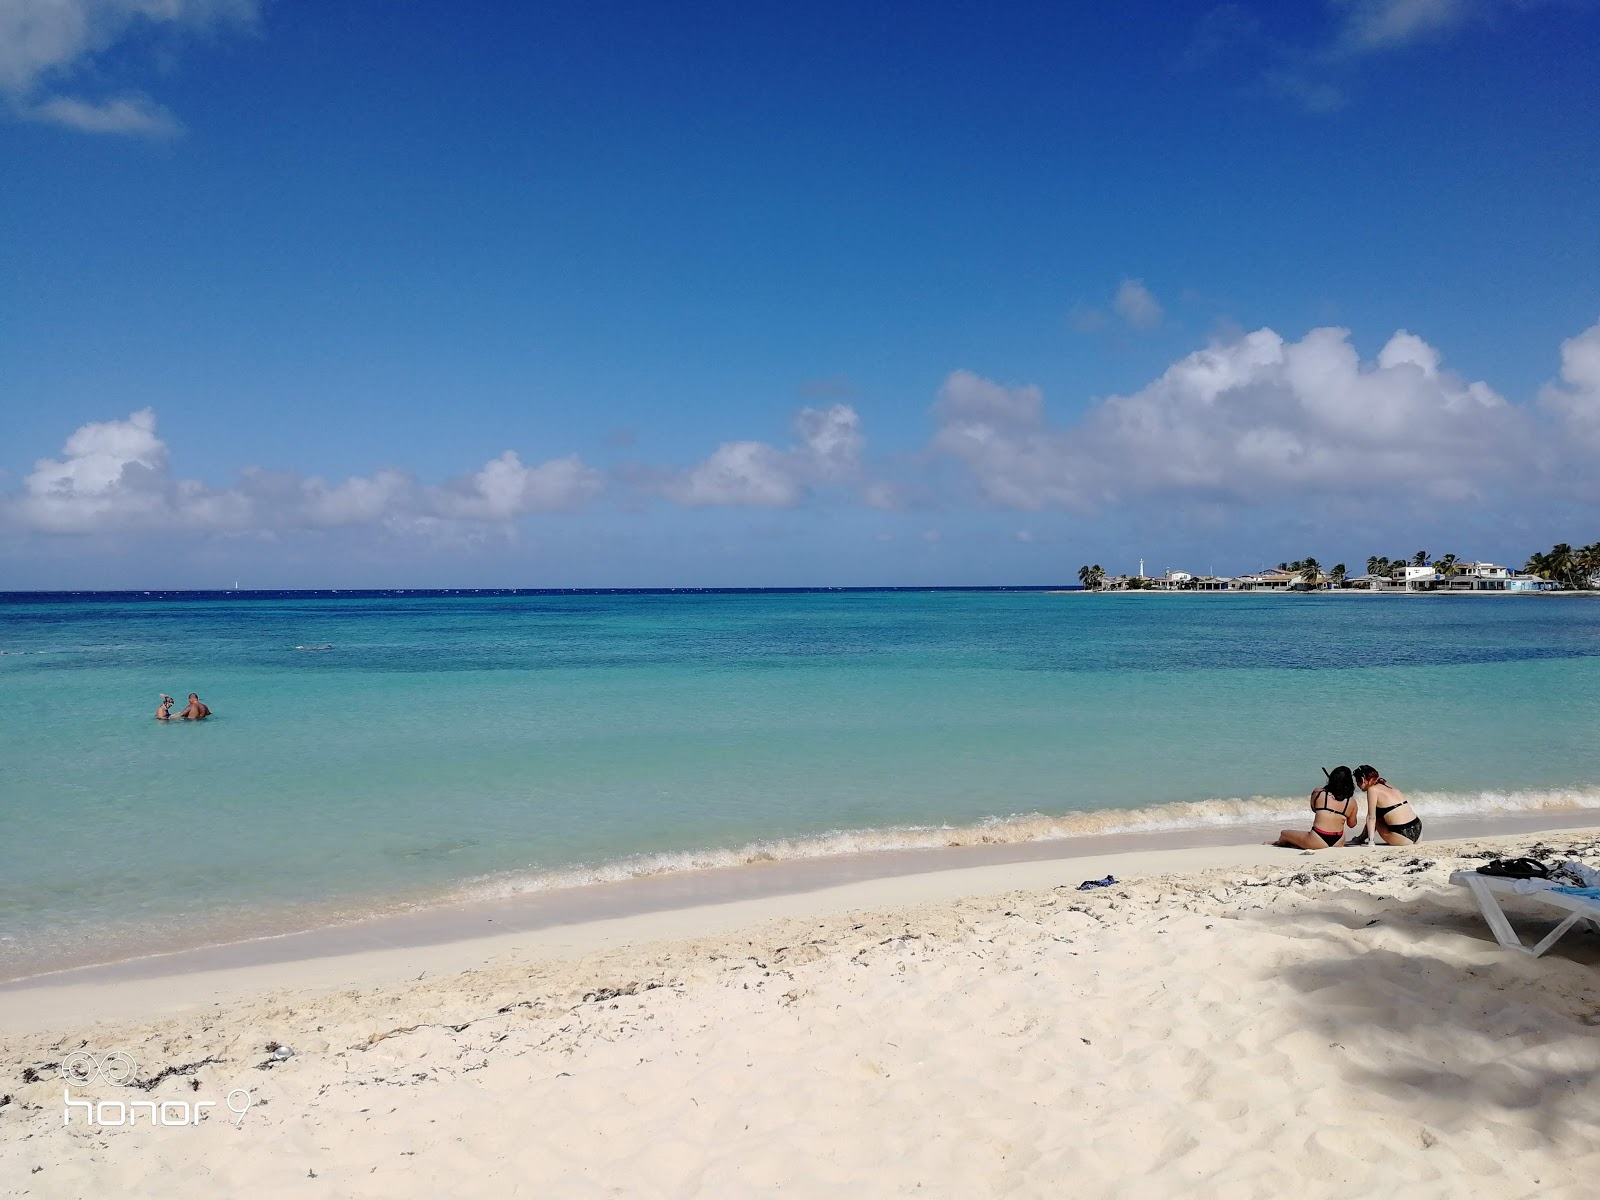 Fotografie cu Playa Bonita cu o suprafață de nisip fin strălucitor